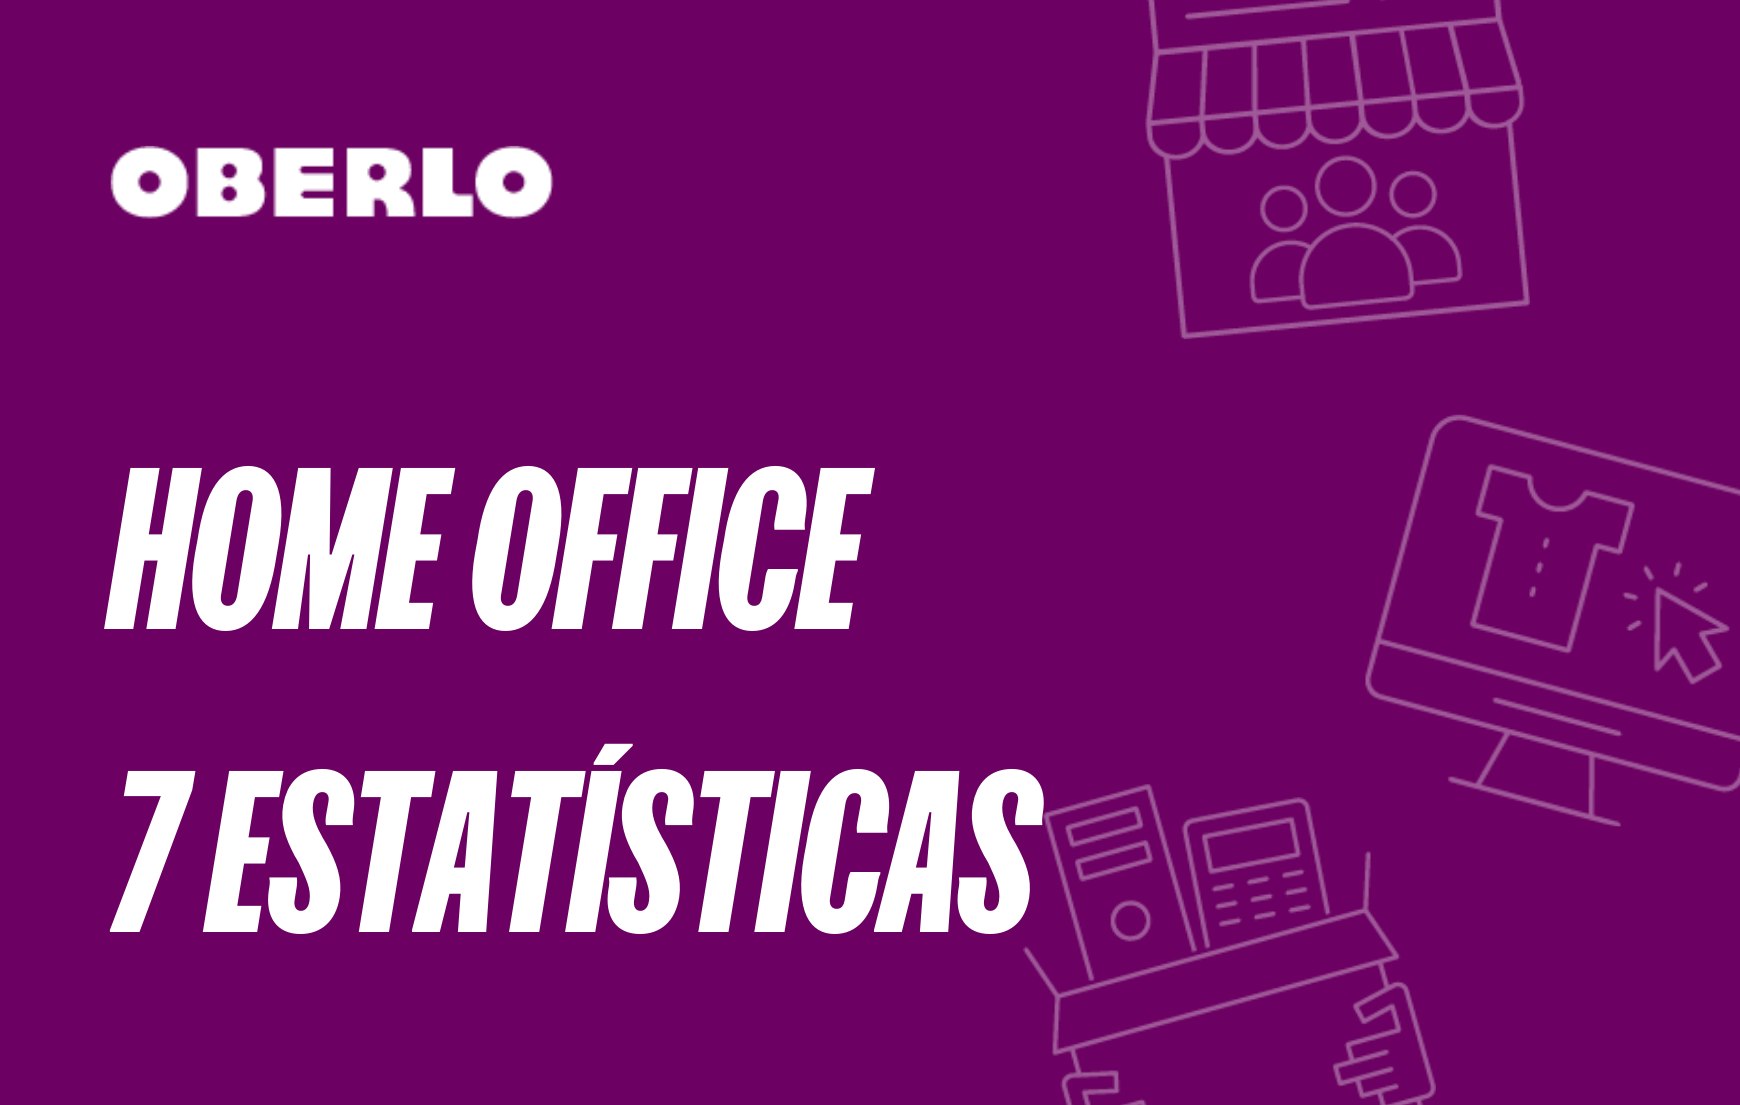 7 estatísticas sobre home office para o ano de 2021